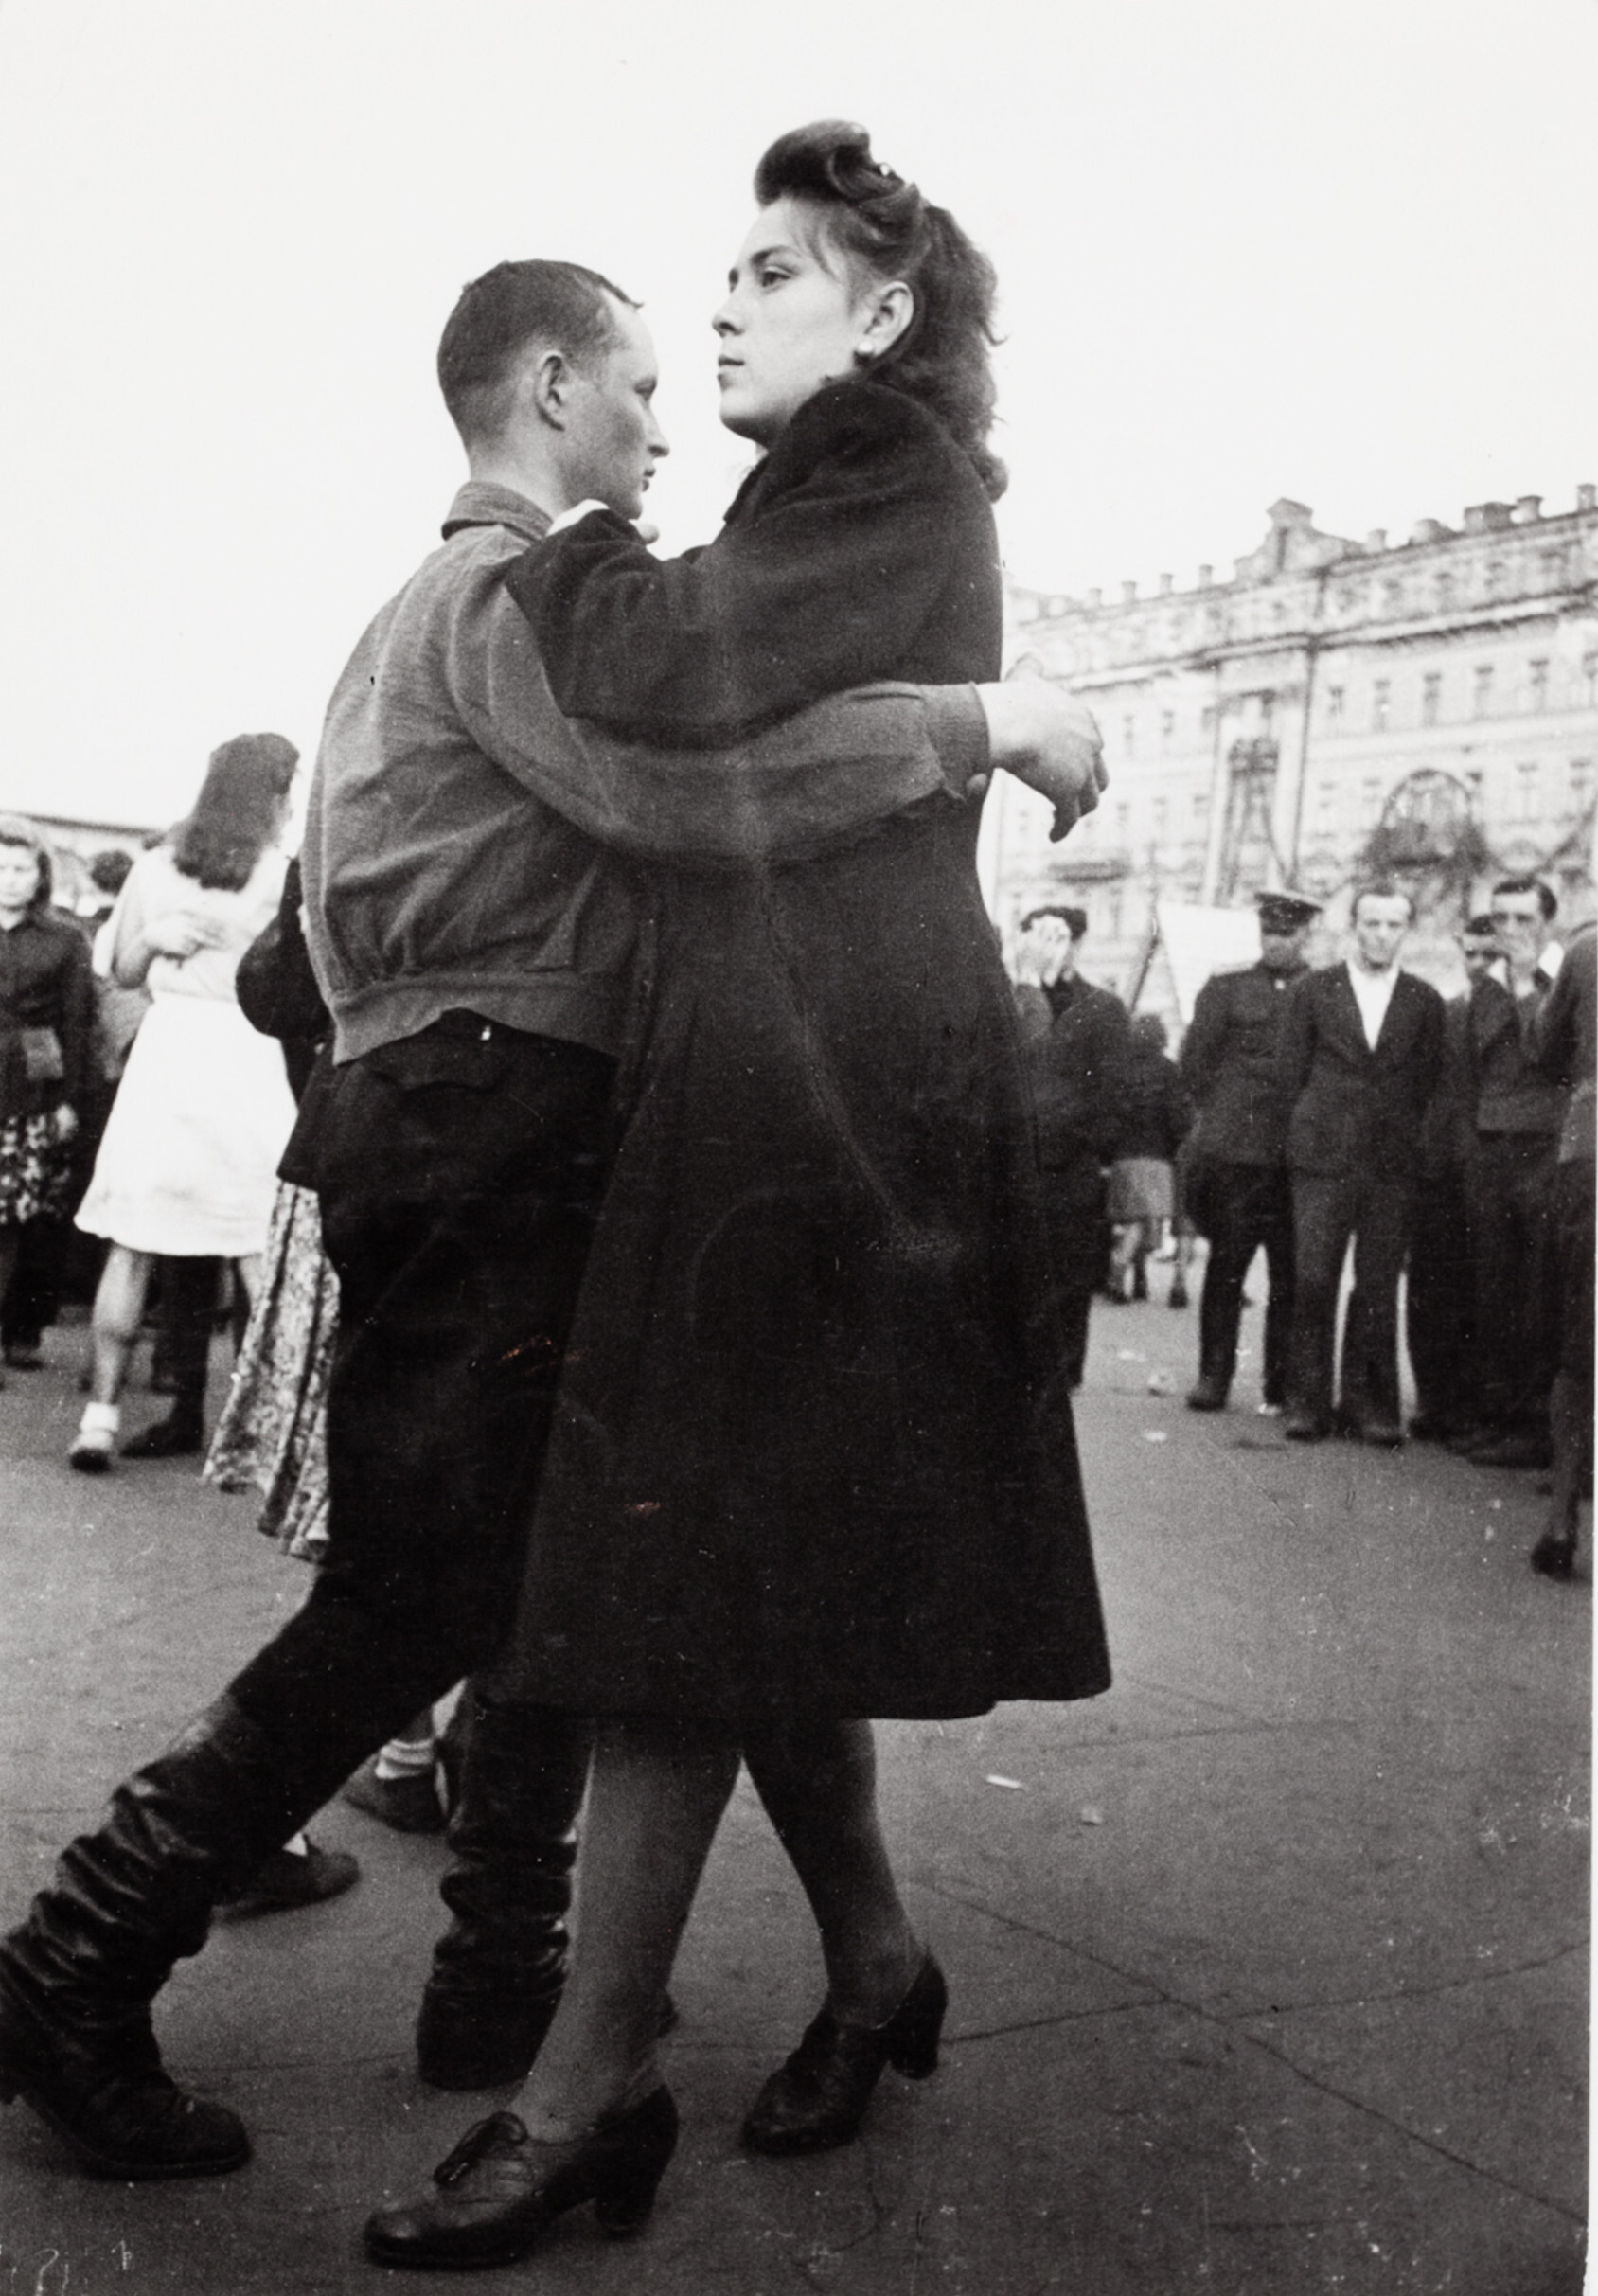 Пары танцуют на улице во время празднования годовщины Москвы, Москва, 1947 год. Фотограф Роберт Капа